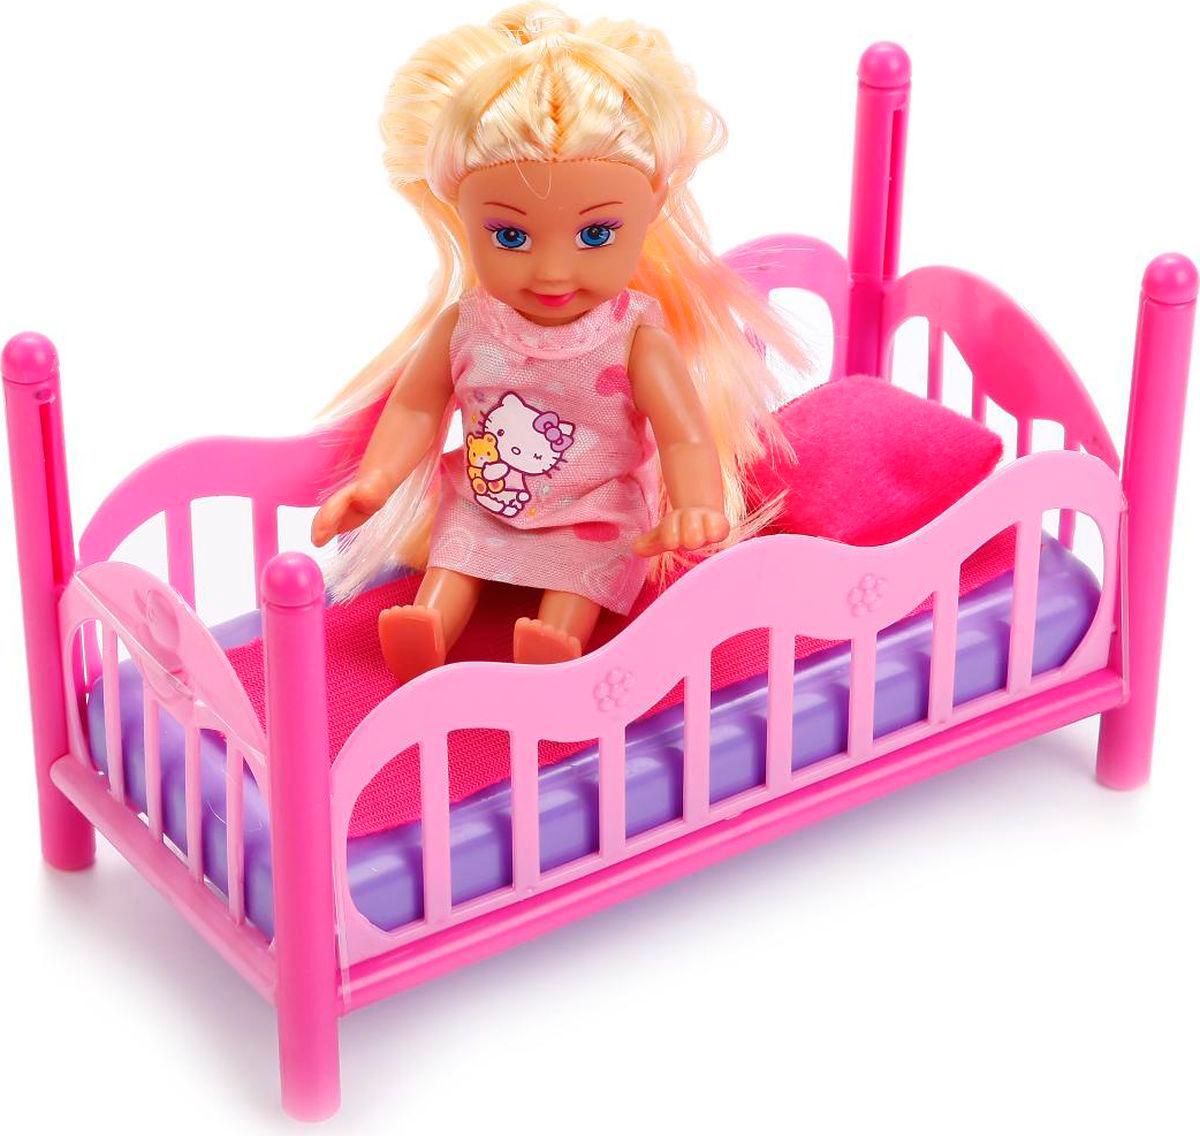 Детская кроватка для кукол. Детские игрушки для девочек. Игрушки и куклы. Детские игрушки куклы. Красивые игрушки для девочек.